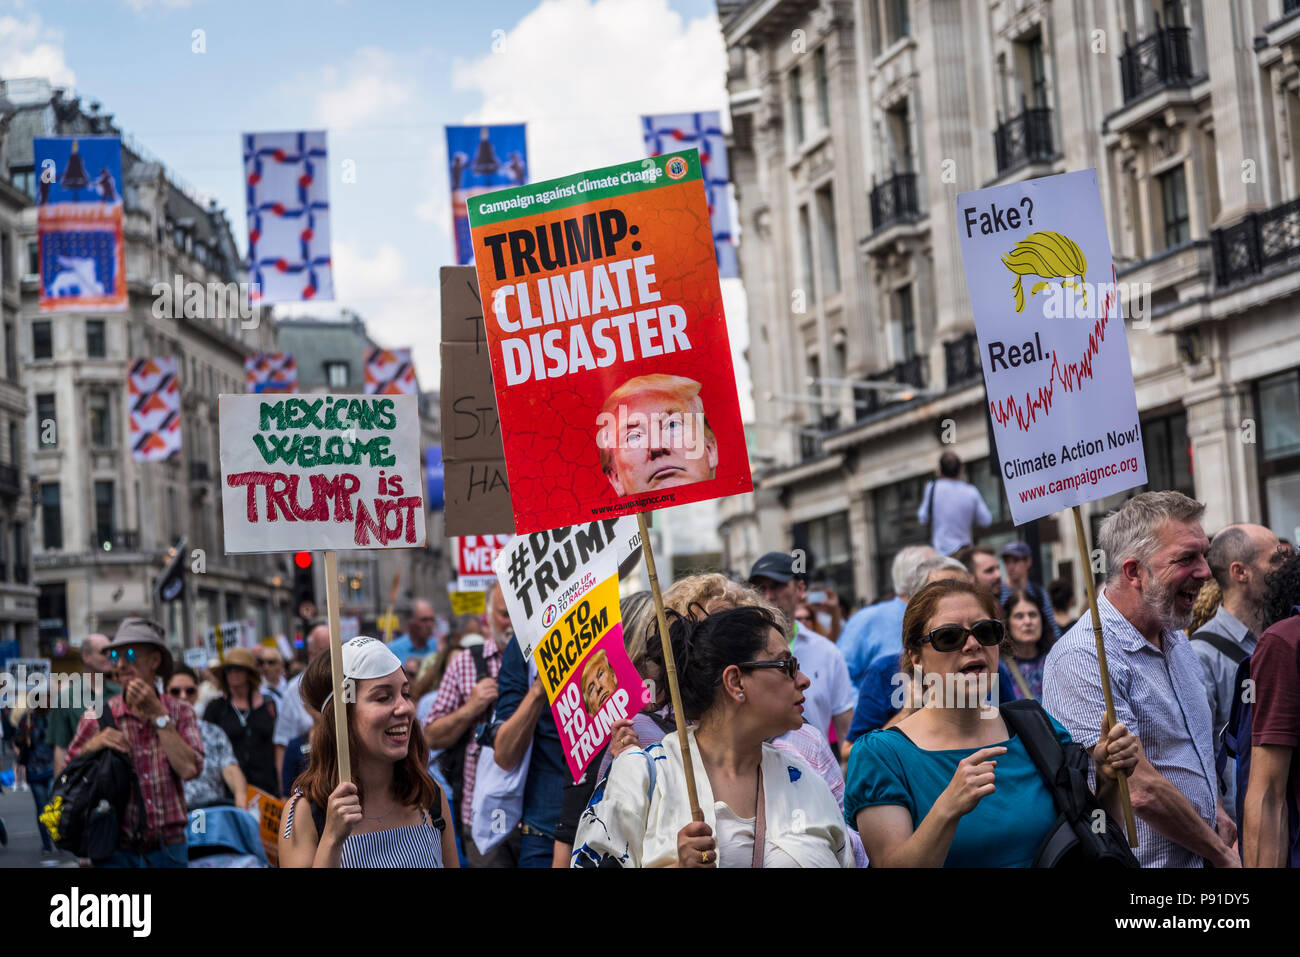 Londra, UK, 13 luglio 2018. Dimostrazione Anti-Trump, Trump: disastro climatico, London, Regno Unito 13.07.2018 Credito: Bjanka Kadic/Alamy Live News Foto Stock